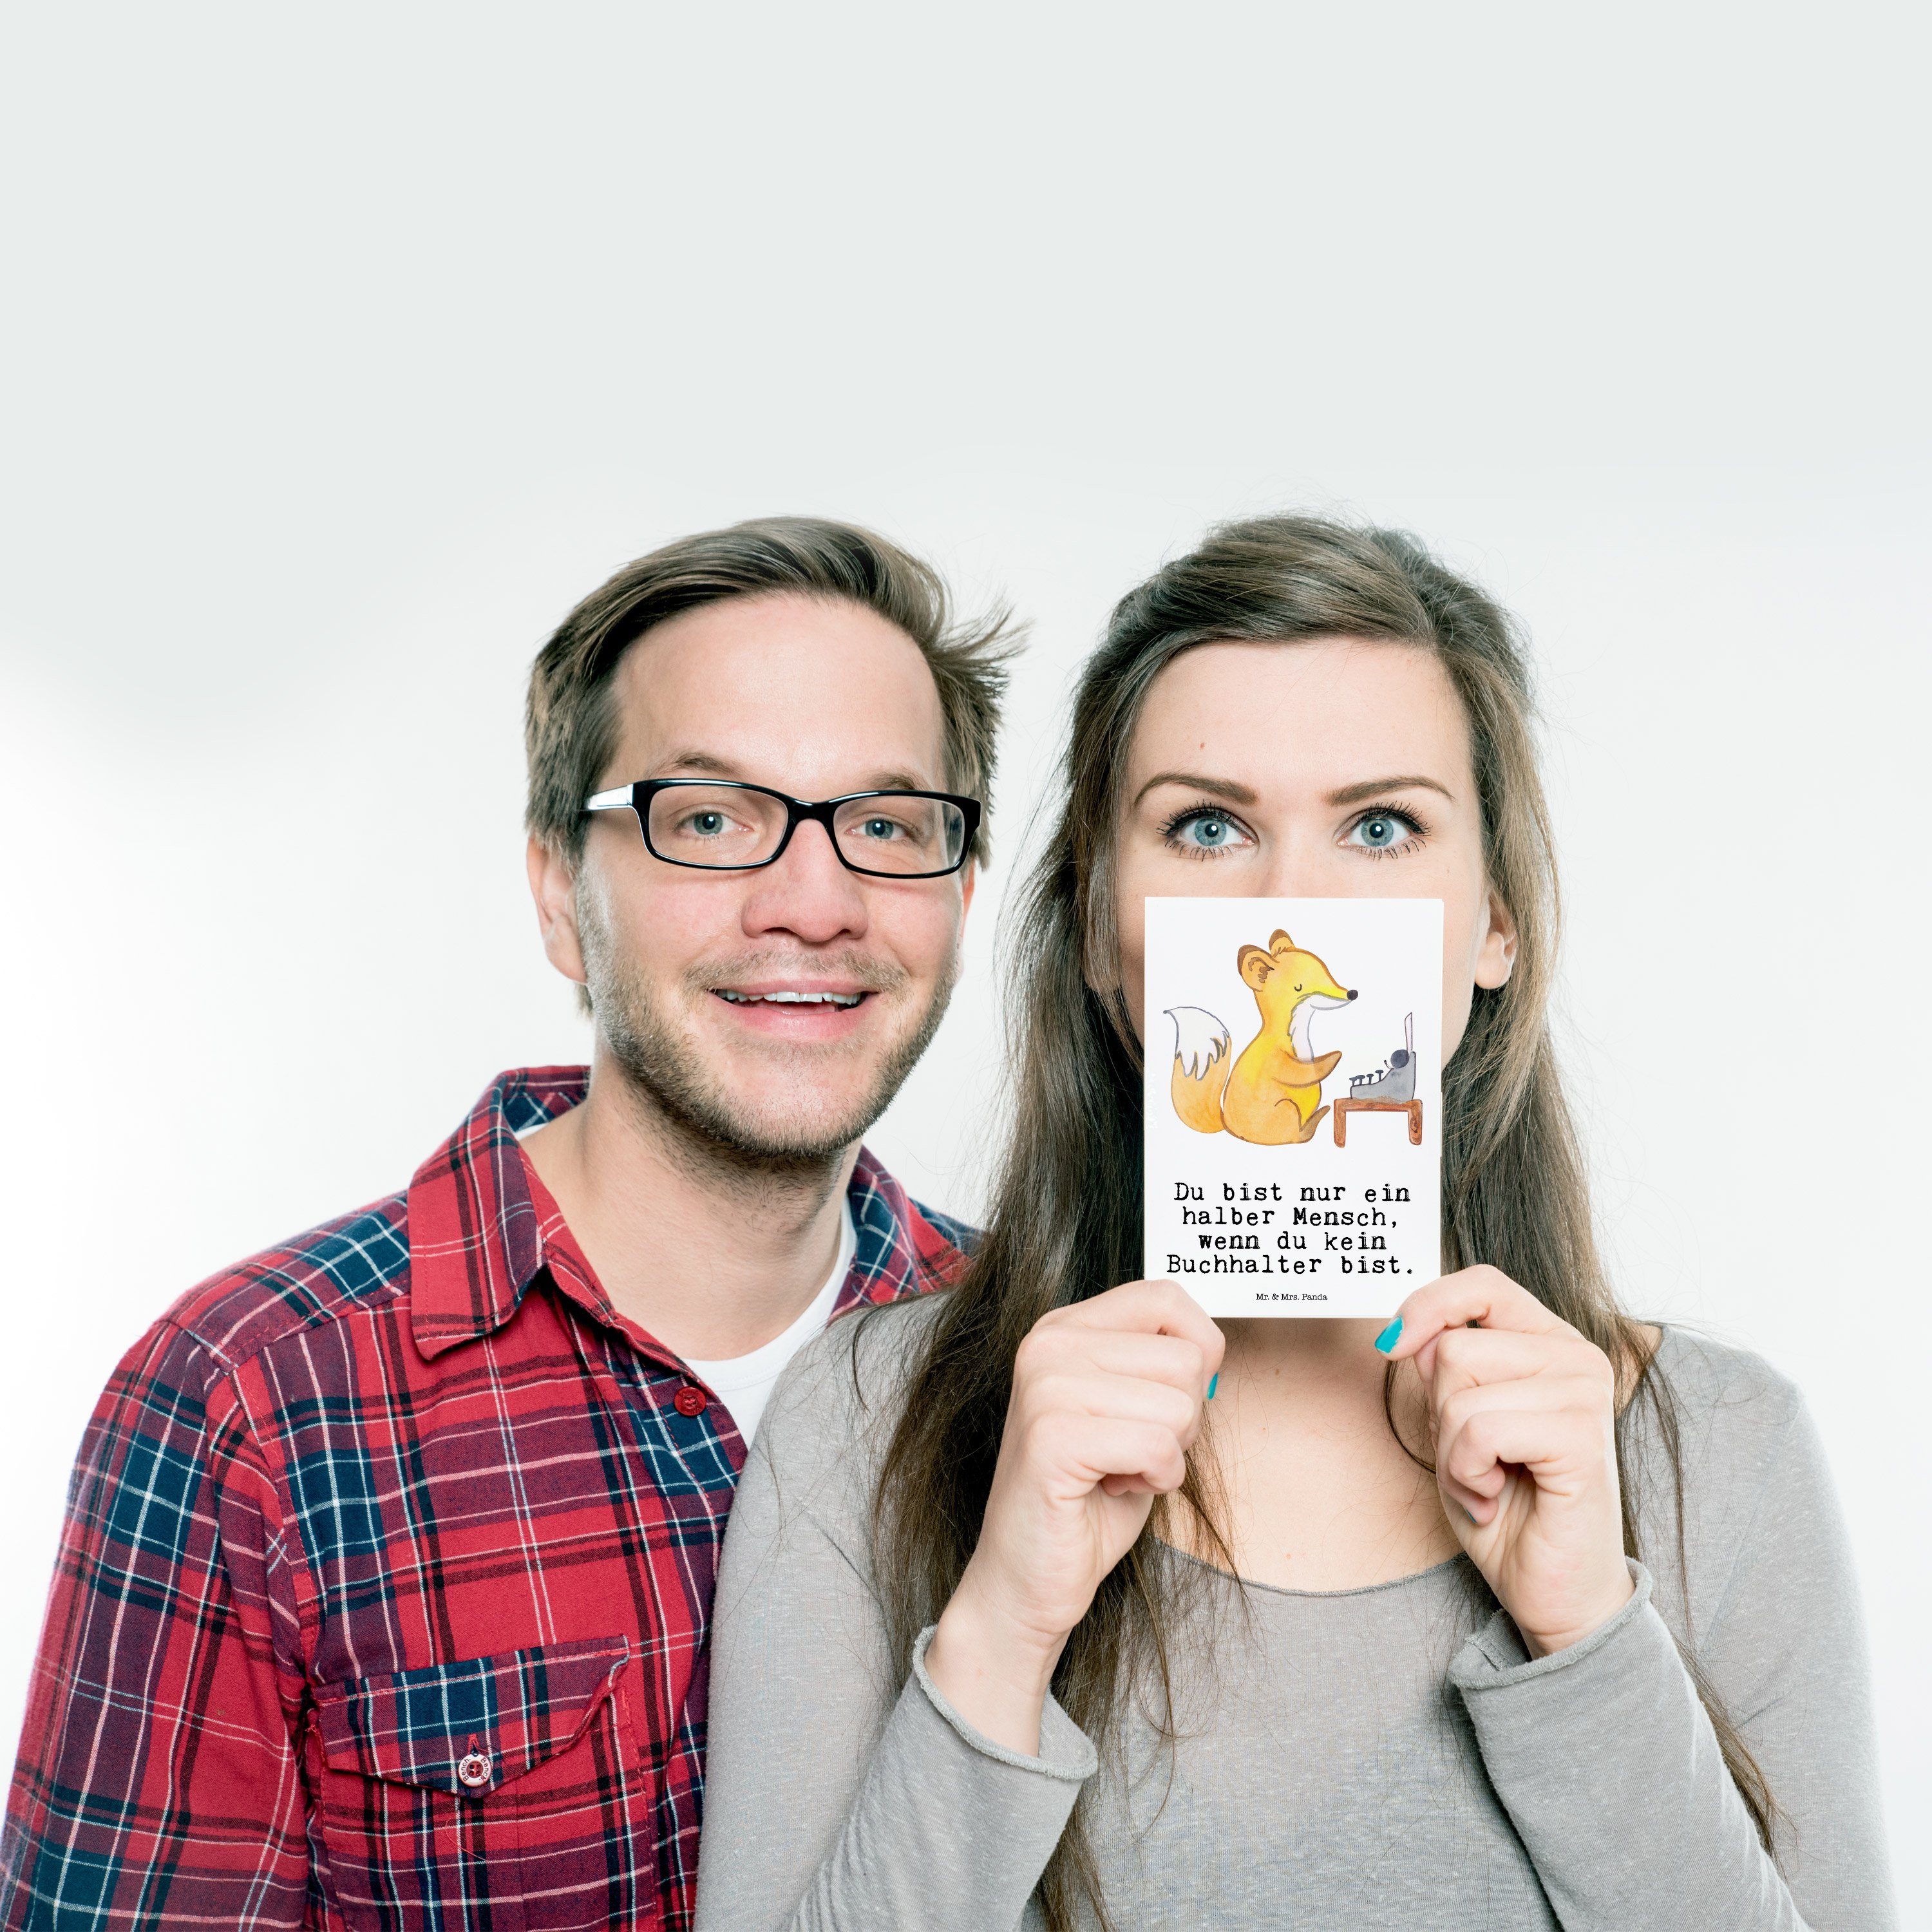 Mr. & Mrs. Panda Postkarte Weiß Mitar Herz - Geschenk, mit - Backoffice Angestellter, Buchhalter